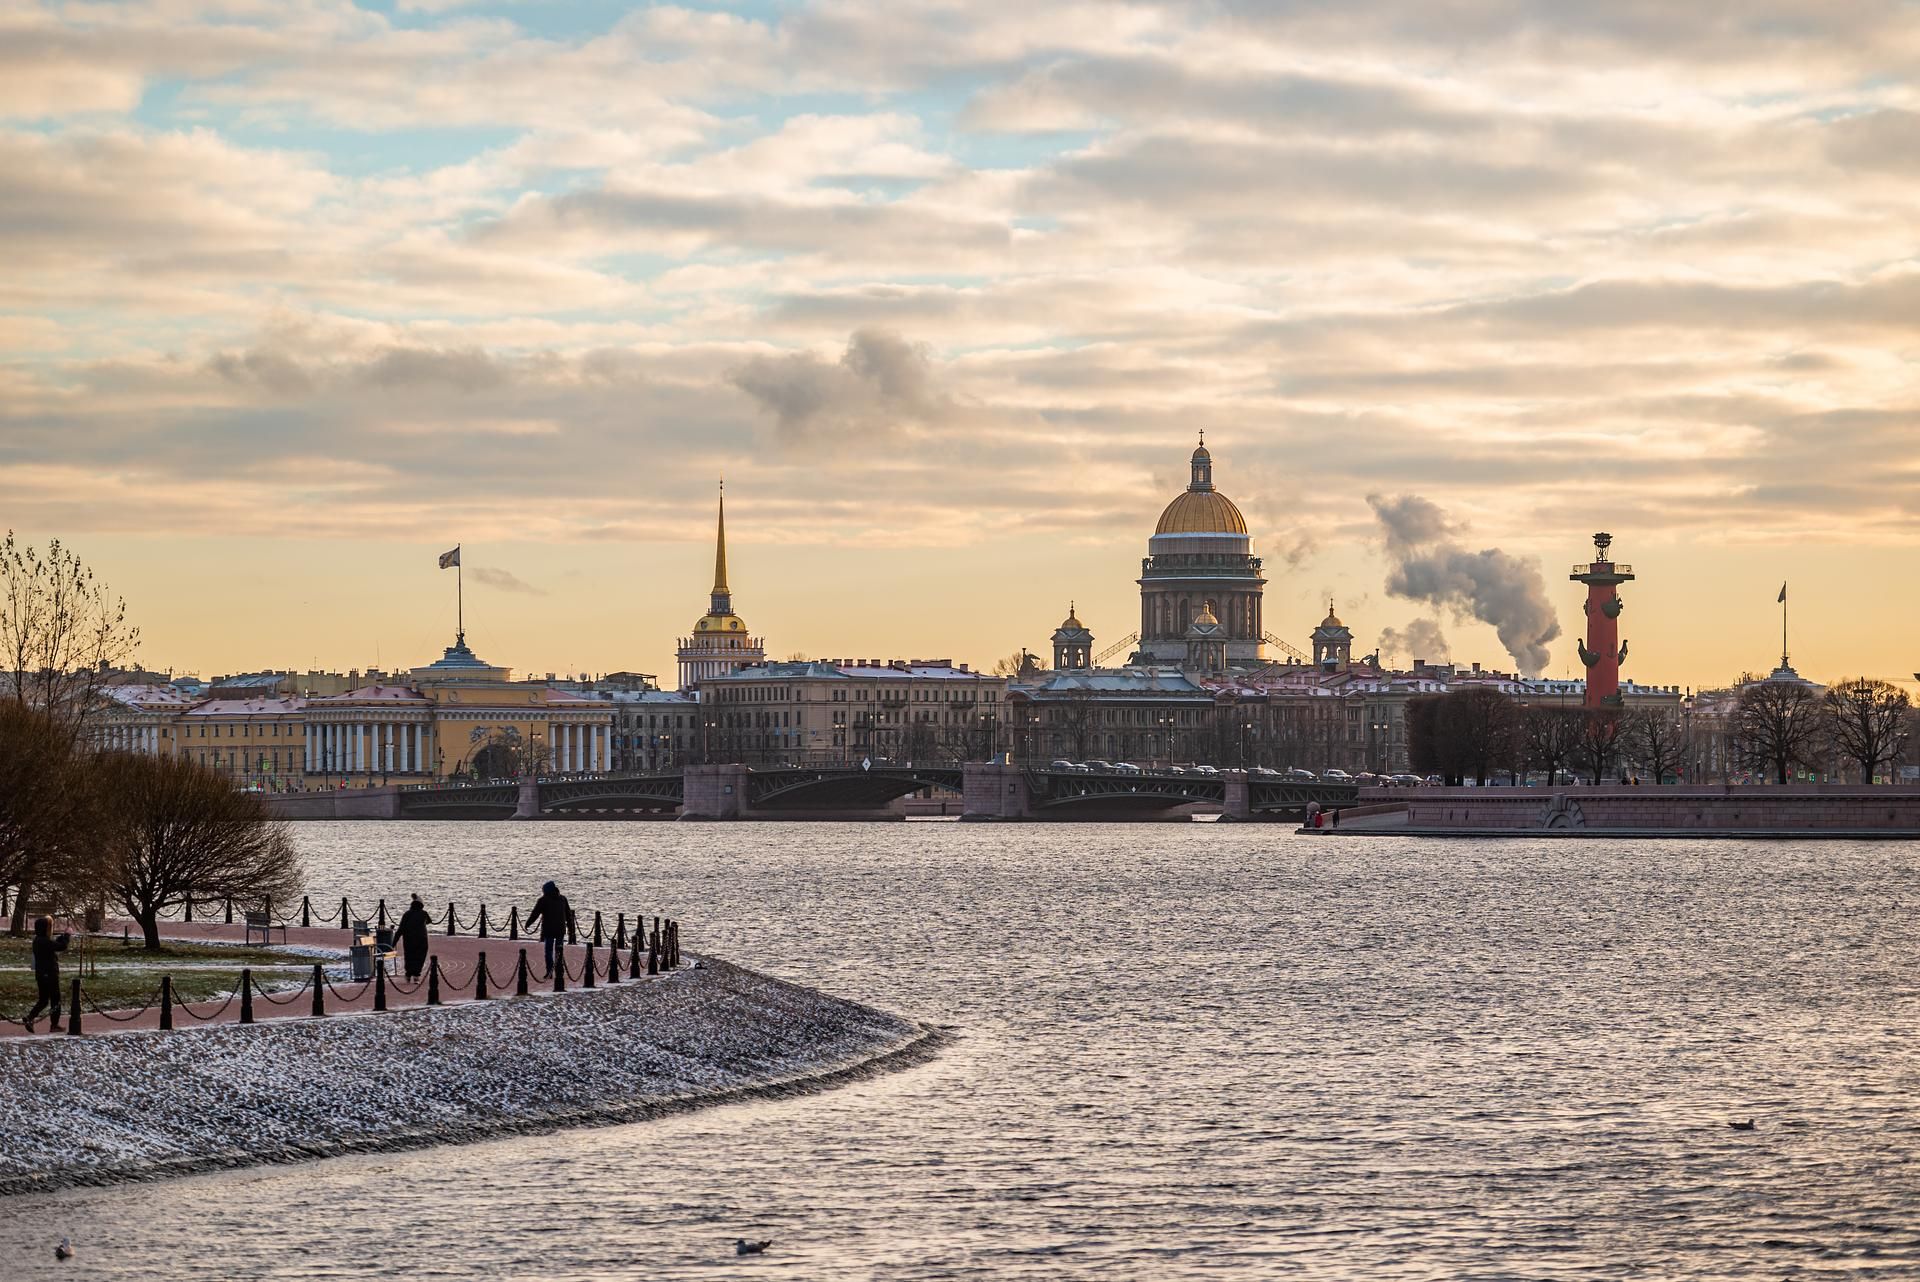 👌 Обзорная экскурсия по Санкт-Петербургу и  Эрмитаж (транспорт+гид)  (ИНДИВИДУАЛЬНАЯ)